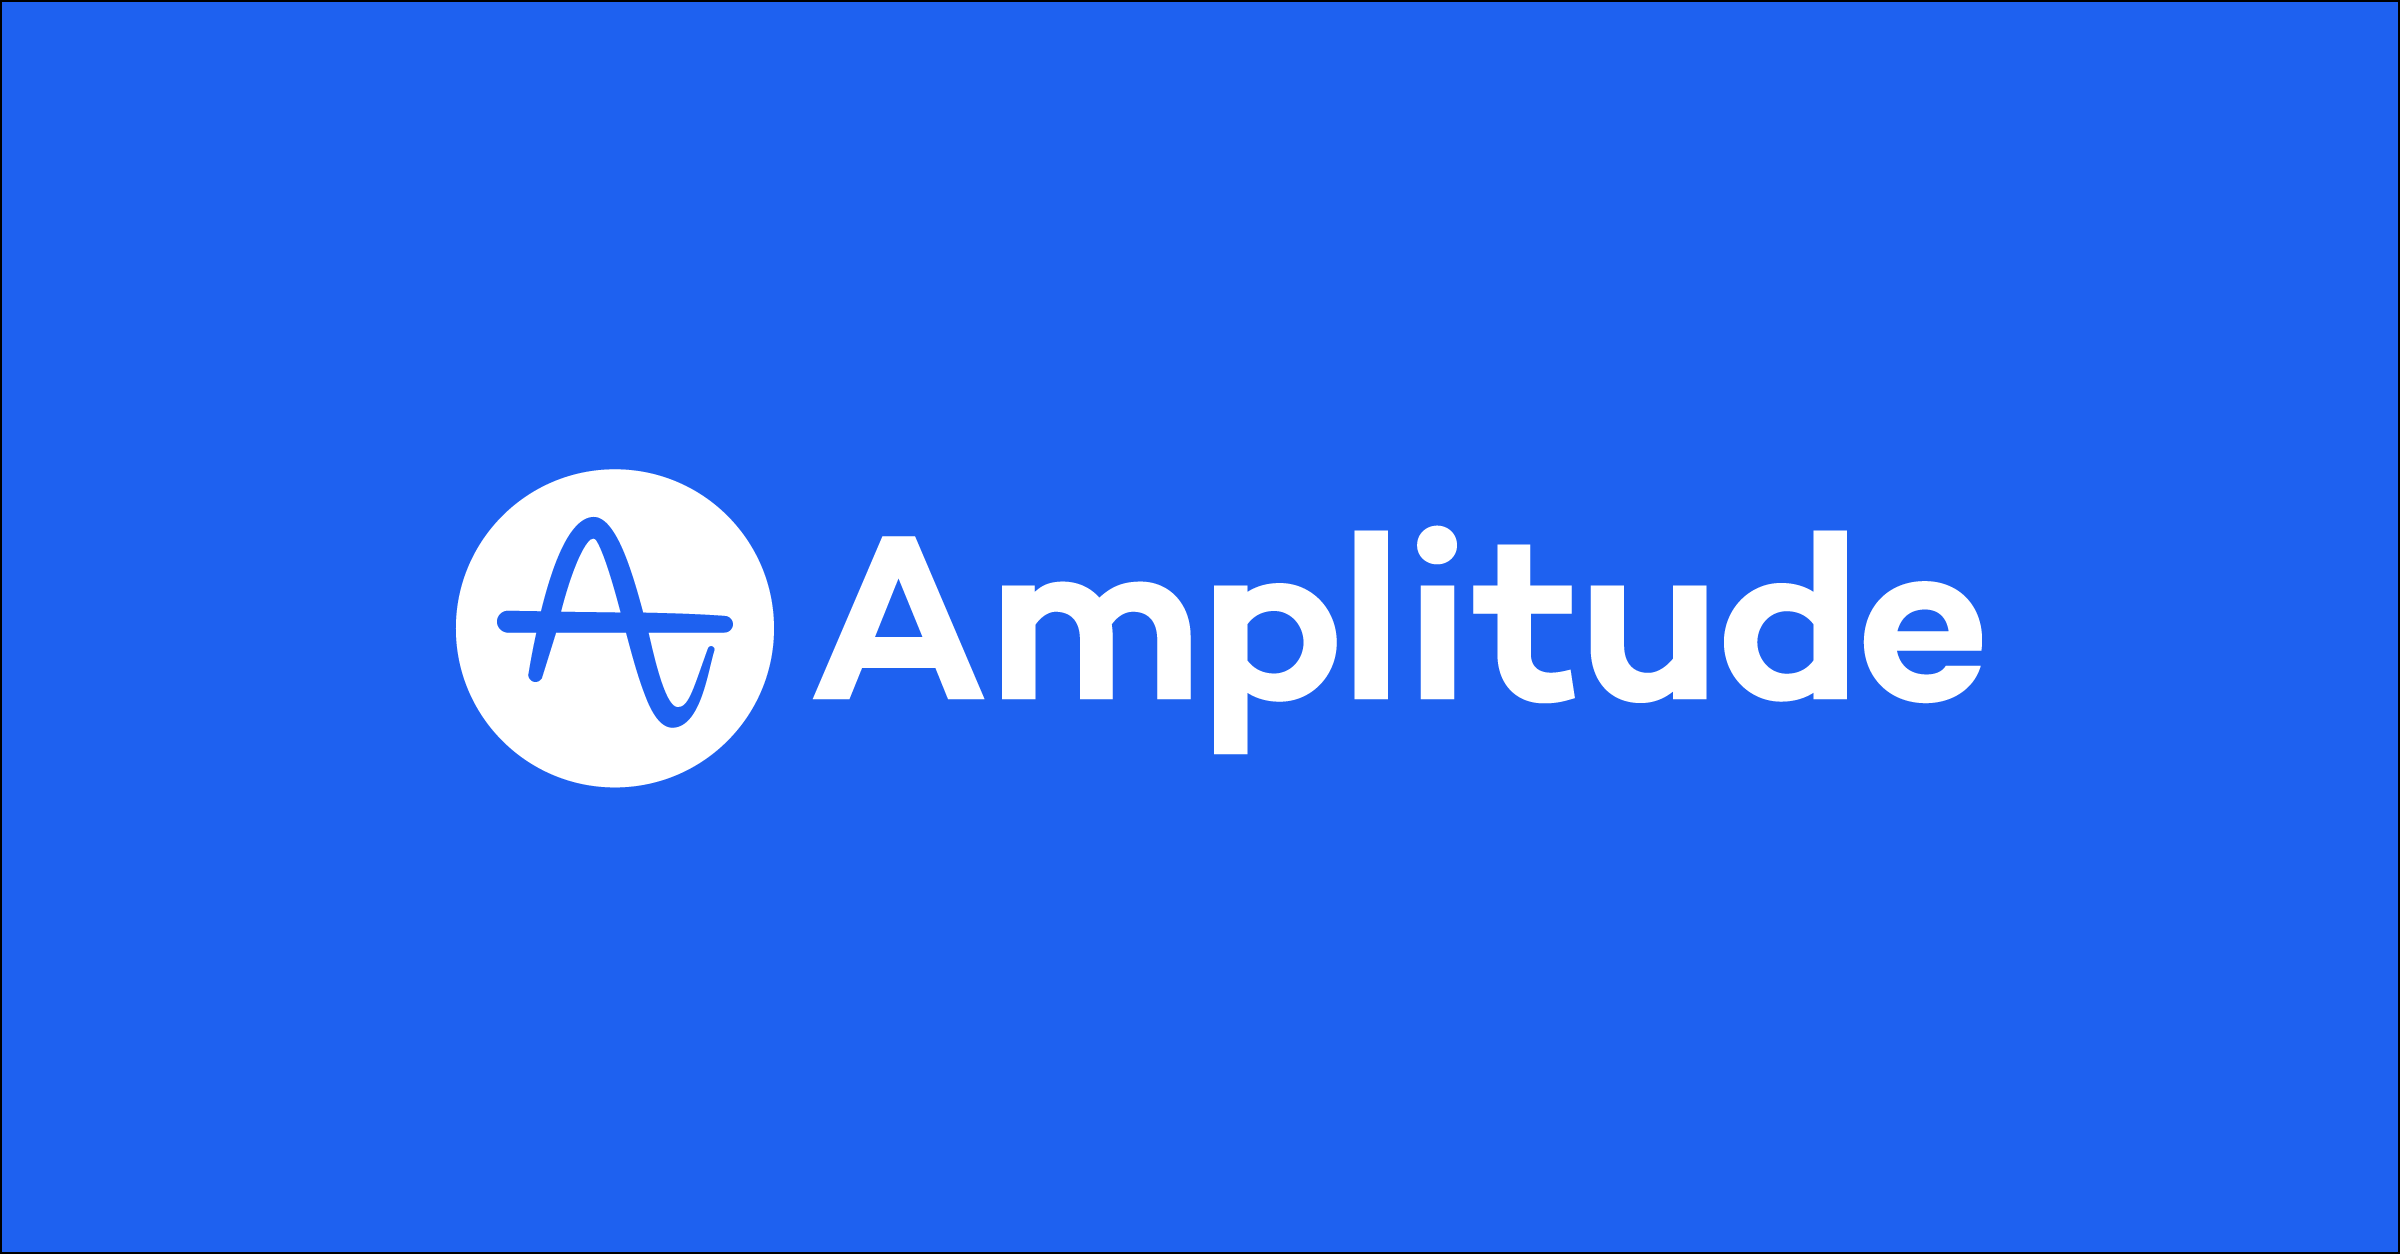 Amplitude logo on blue background